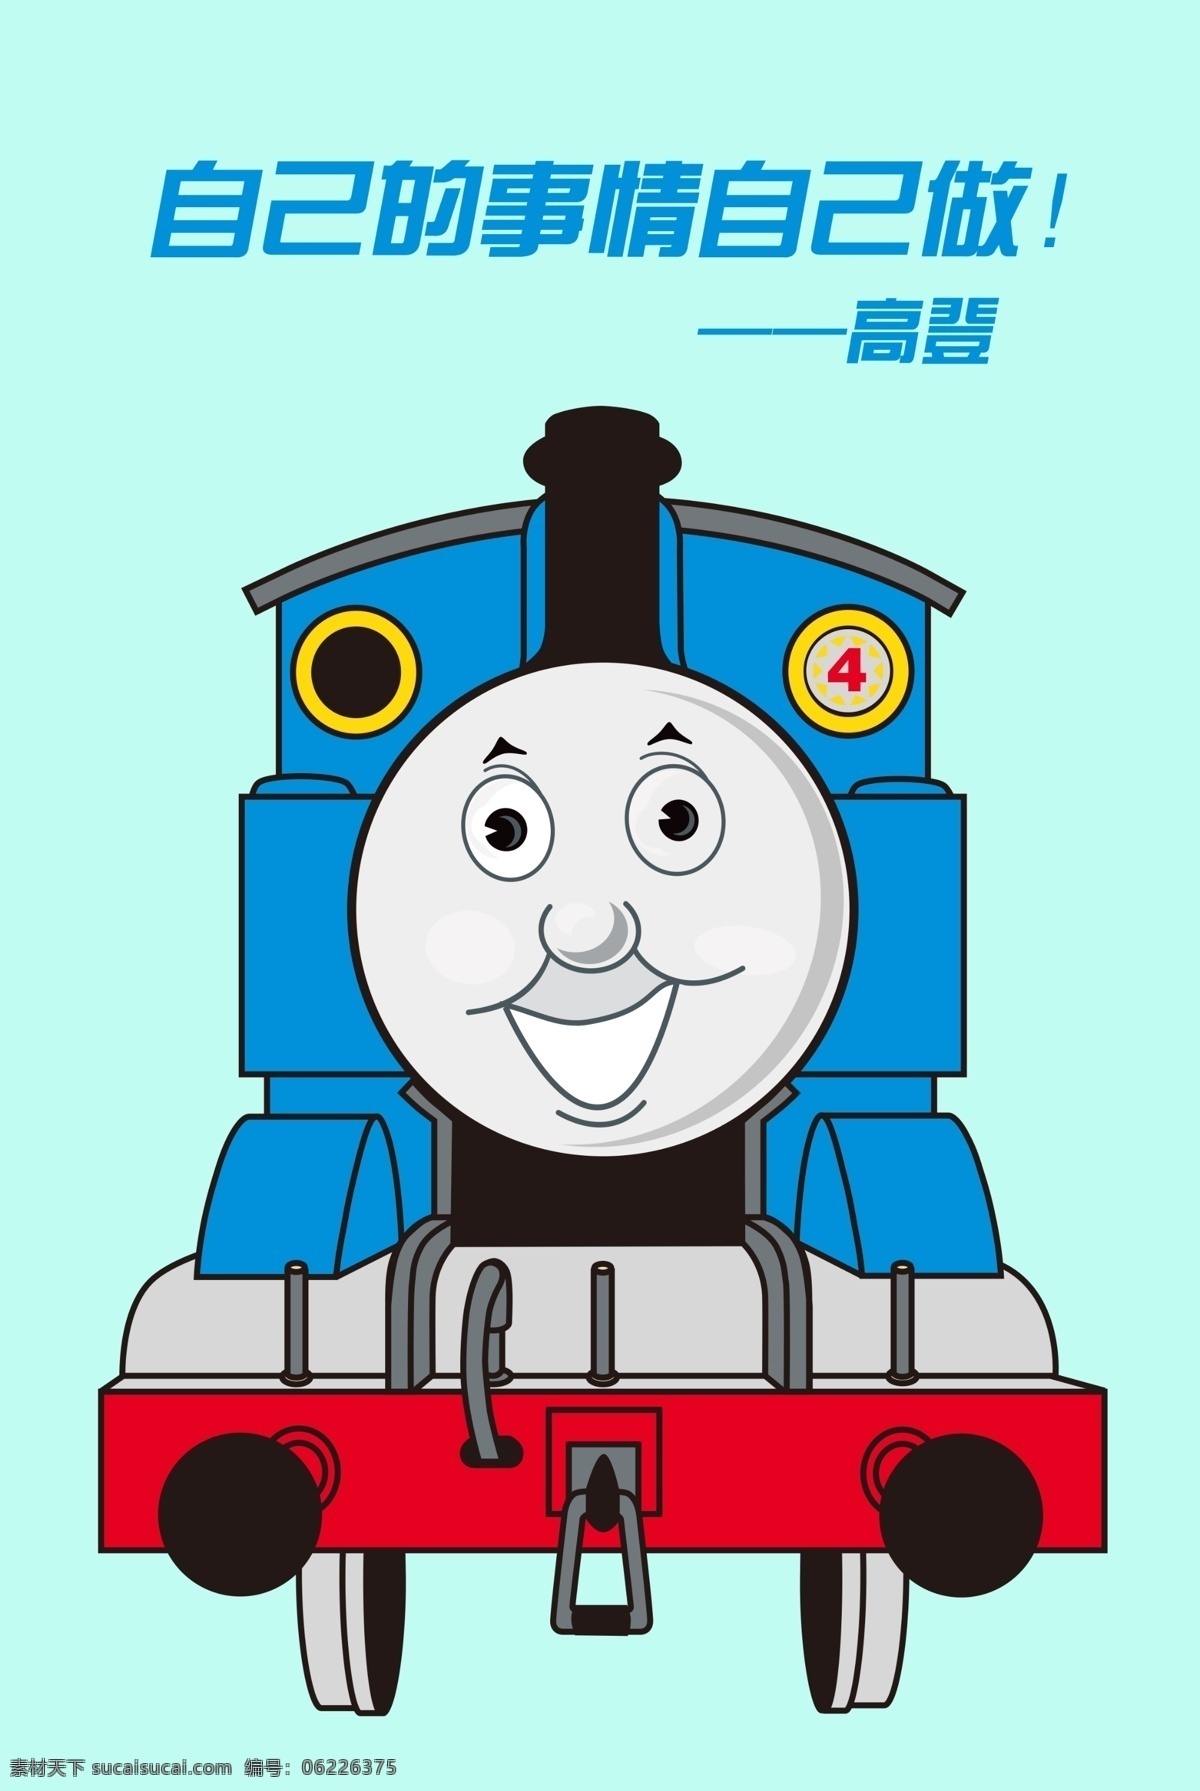 托马斯 小 火车 高登 小火车 蓝色 卡通 励志 孩子 教育